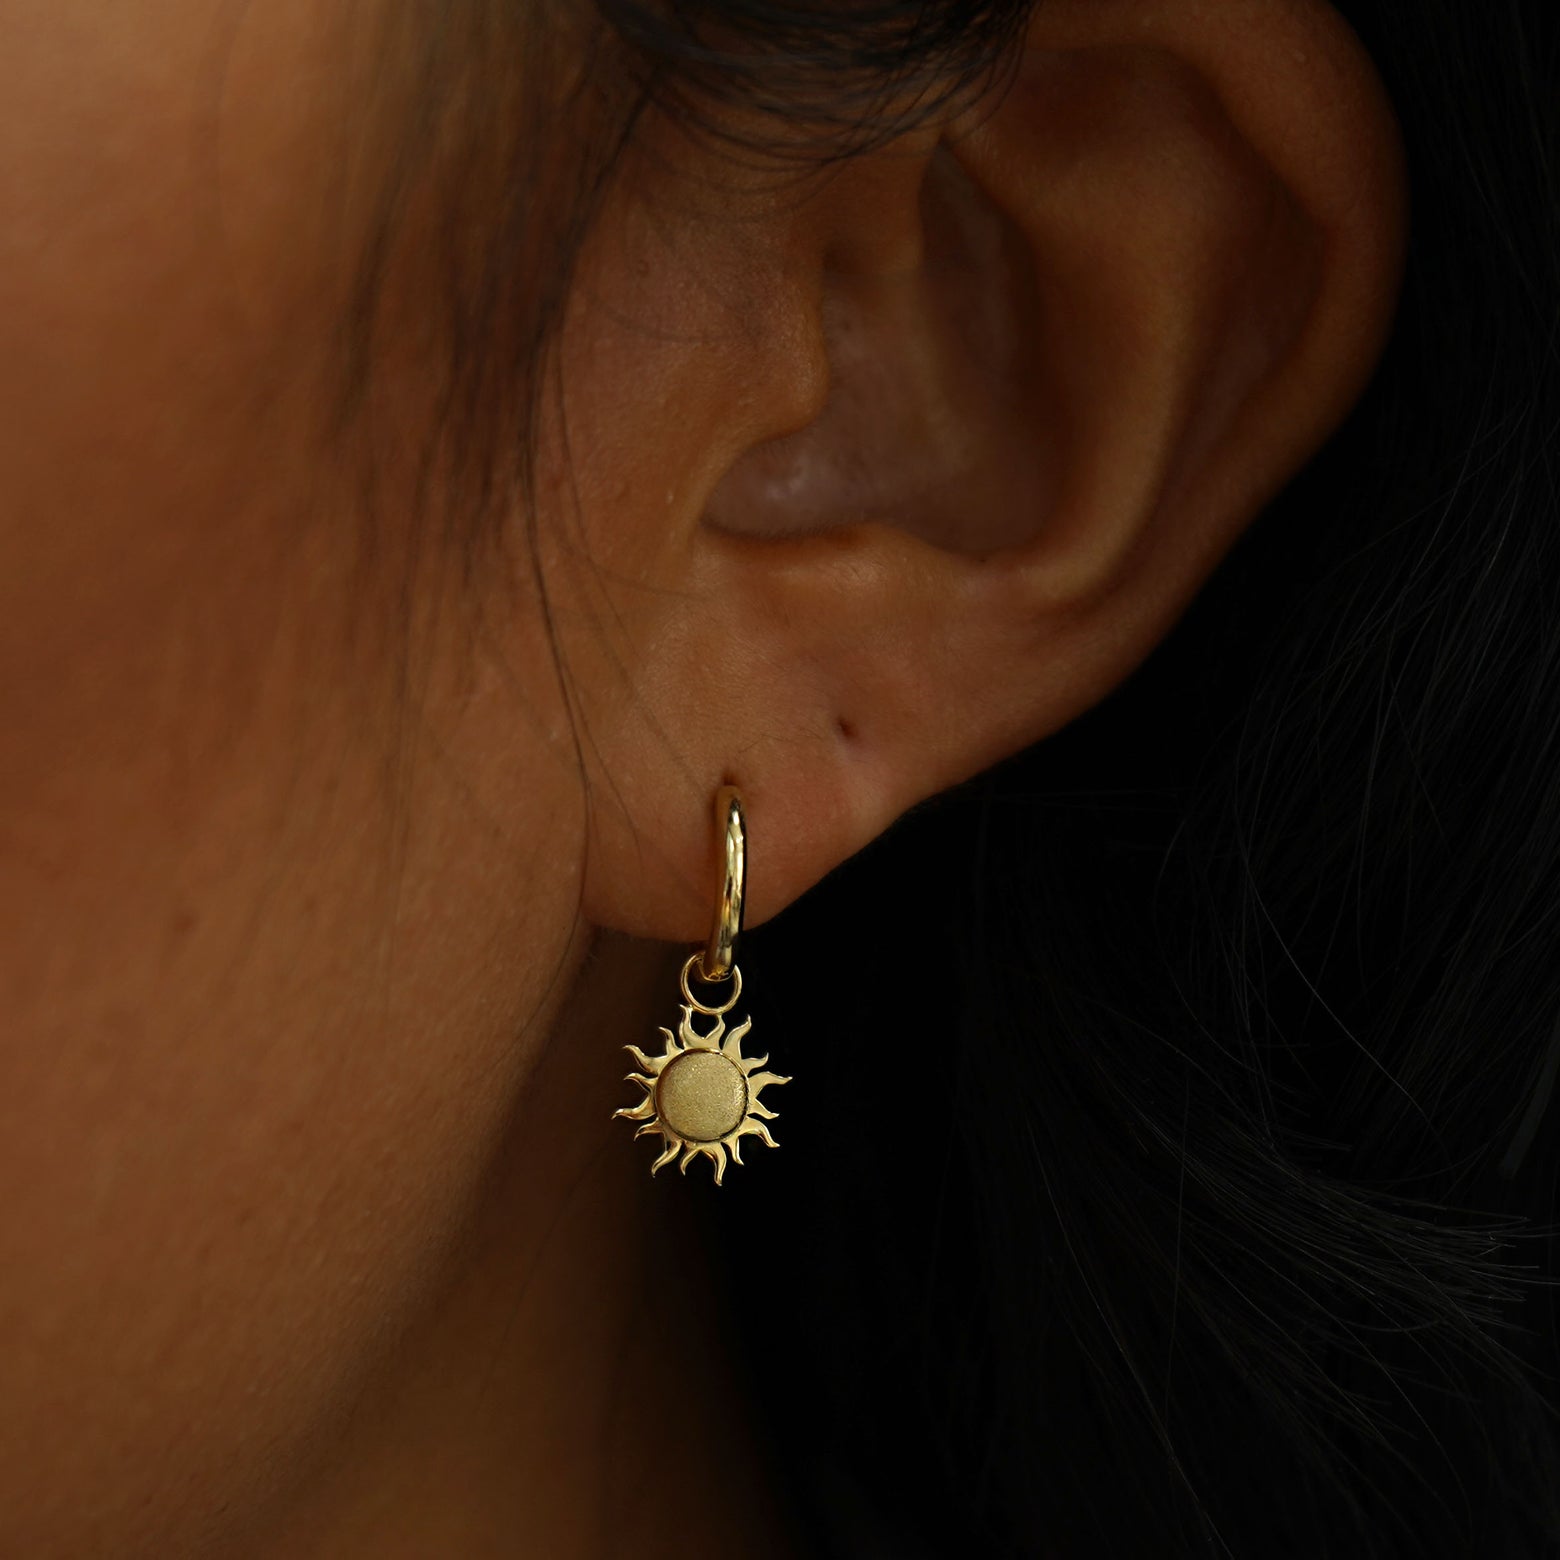 A model's ear wearing a 14k solid gold Sun Charm on a Curvy Huggie Hoop